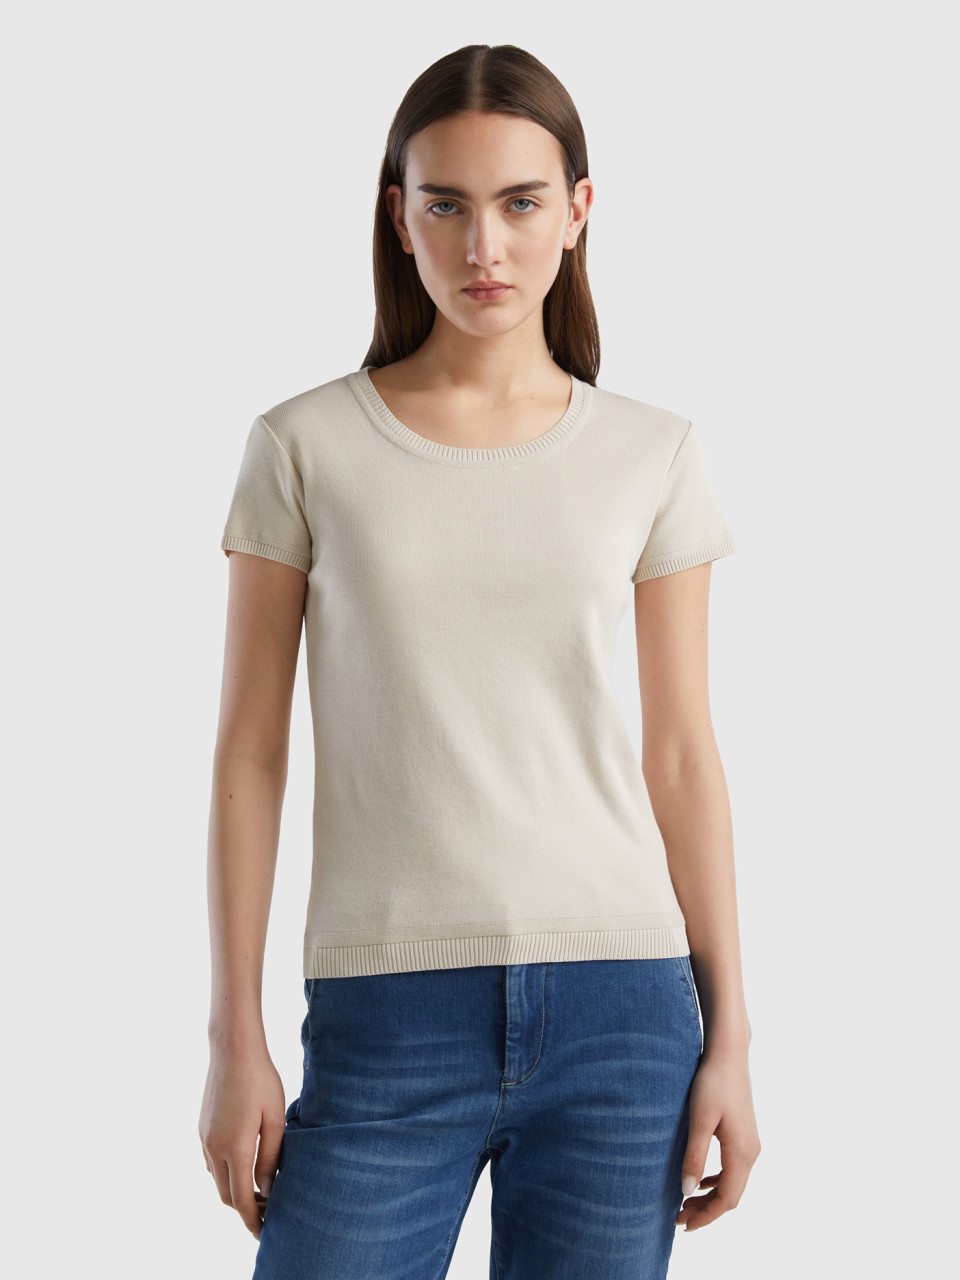 Benetton Online exclusive, Short Sleeve Sweater In 100% Cotton, Beige, Women